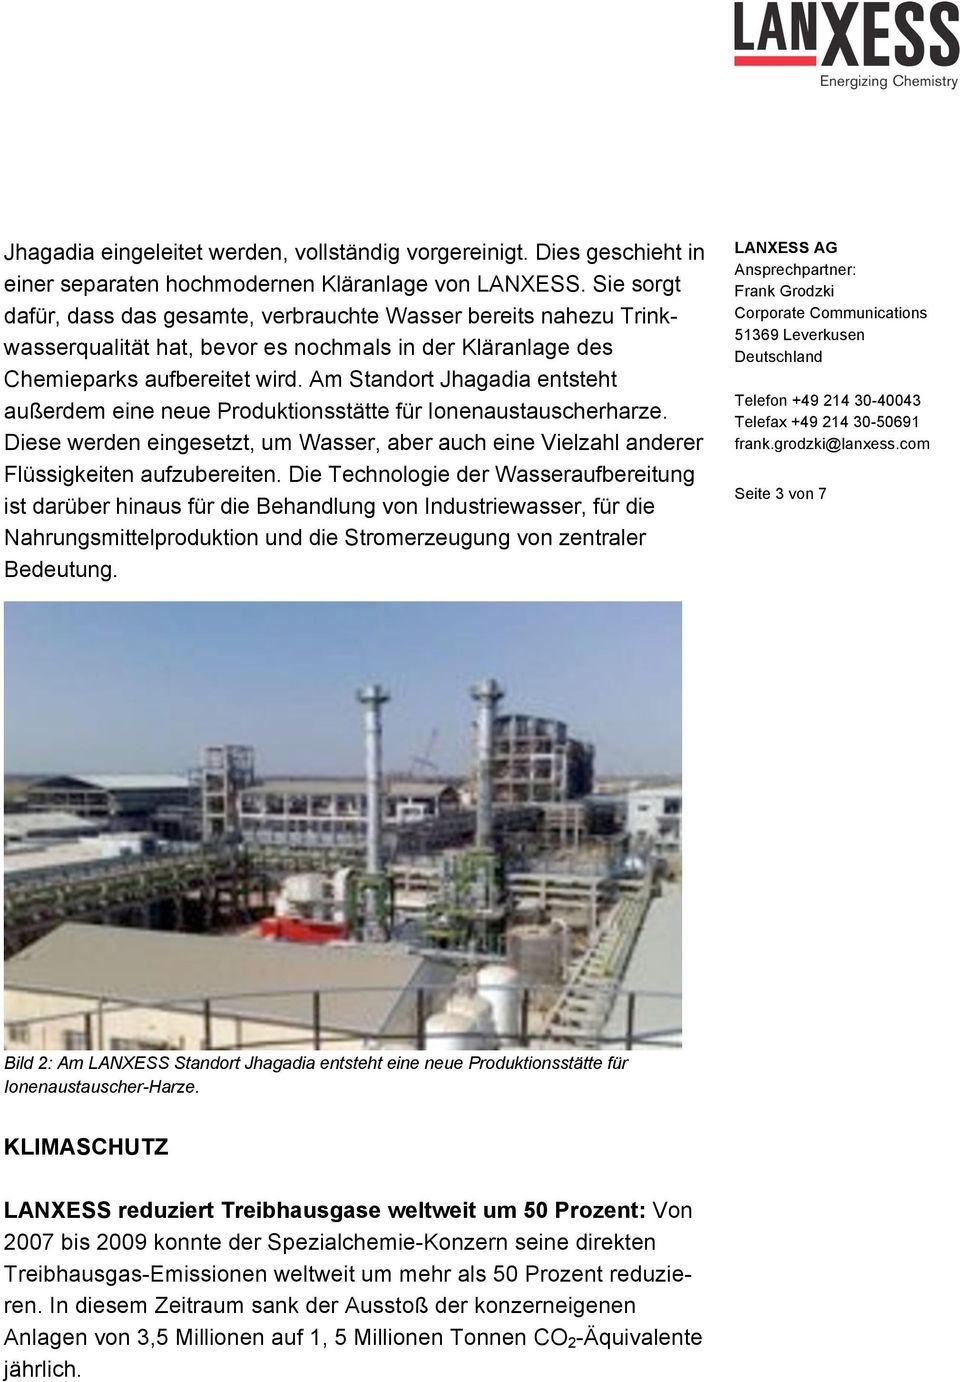 Am Standort Jhagadia entsteht außerdem eine neue Produktionsstätte für Ionenaustauscherharze. Diese werden eingesetzt, um Wasser, aber auch eine Vielzahl anderer Flüssigkeiten aufzubereiten.